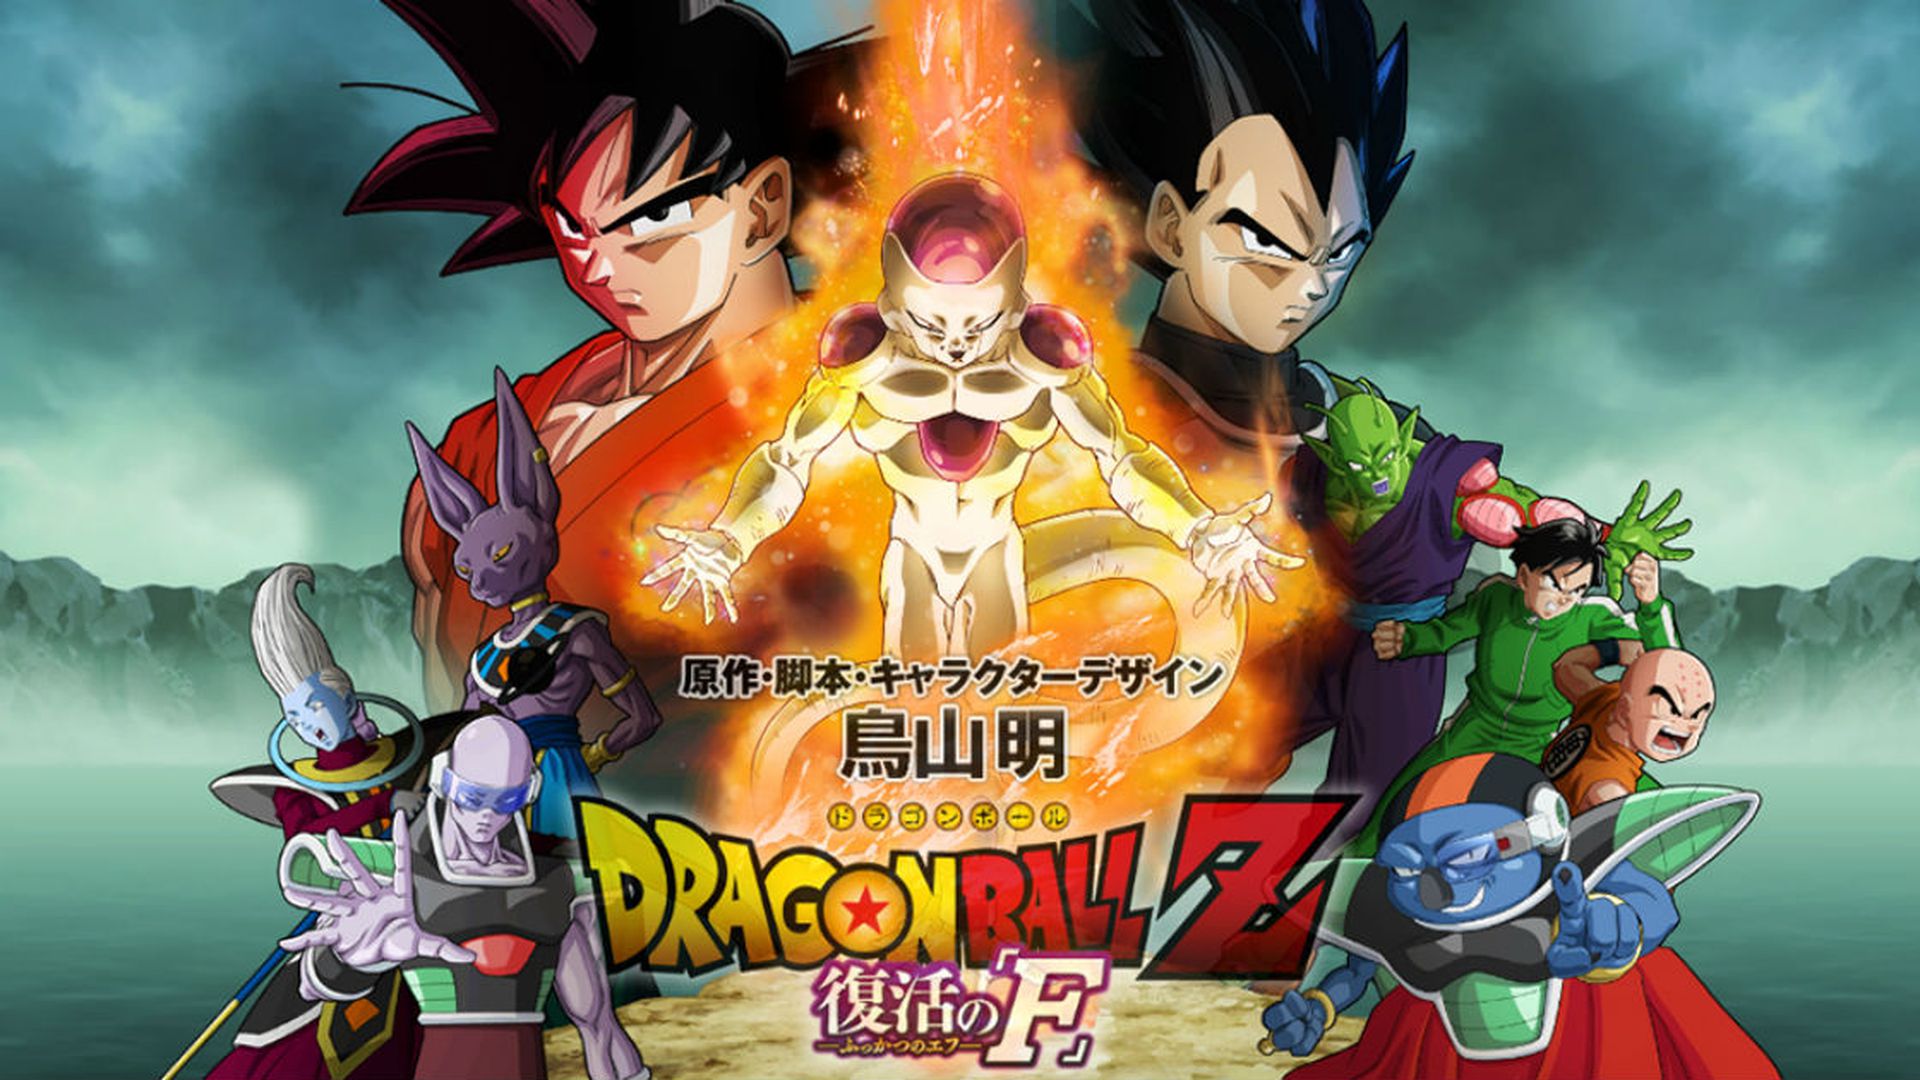 Vuelve Dragon Ball Z con La Resurrección de Freezer